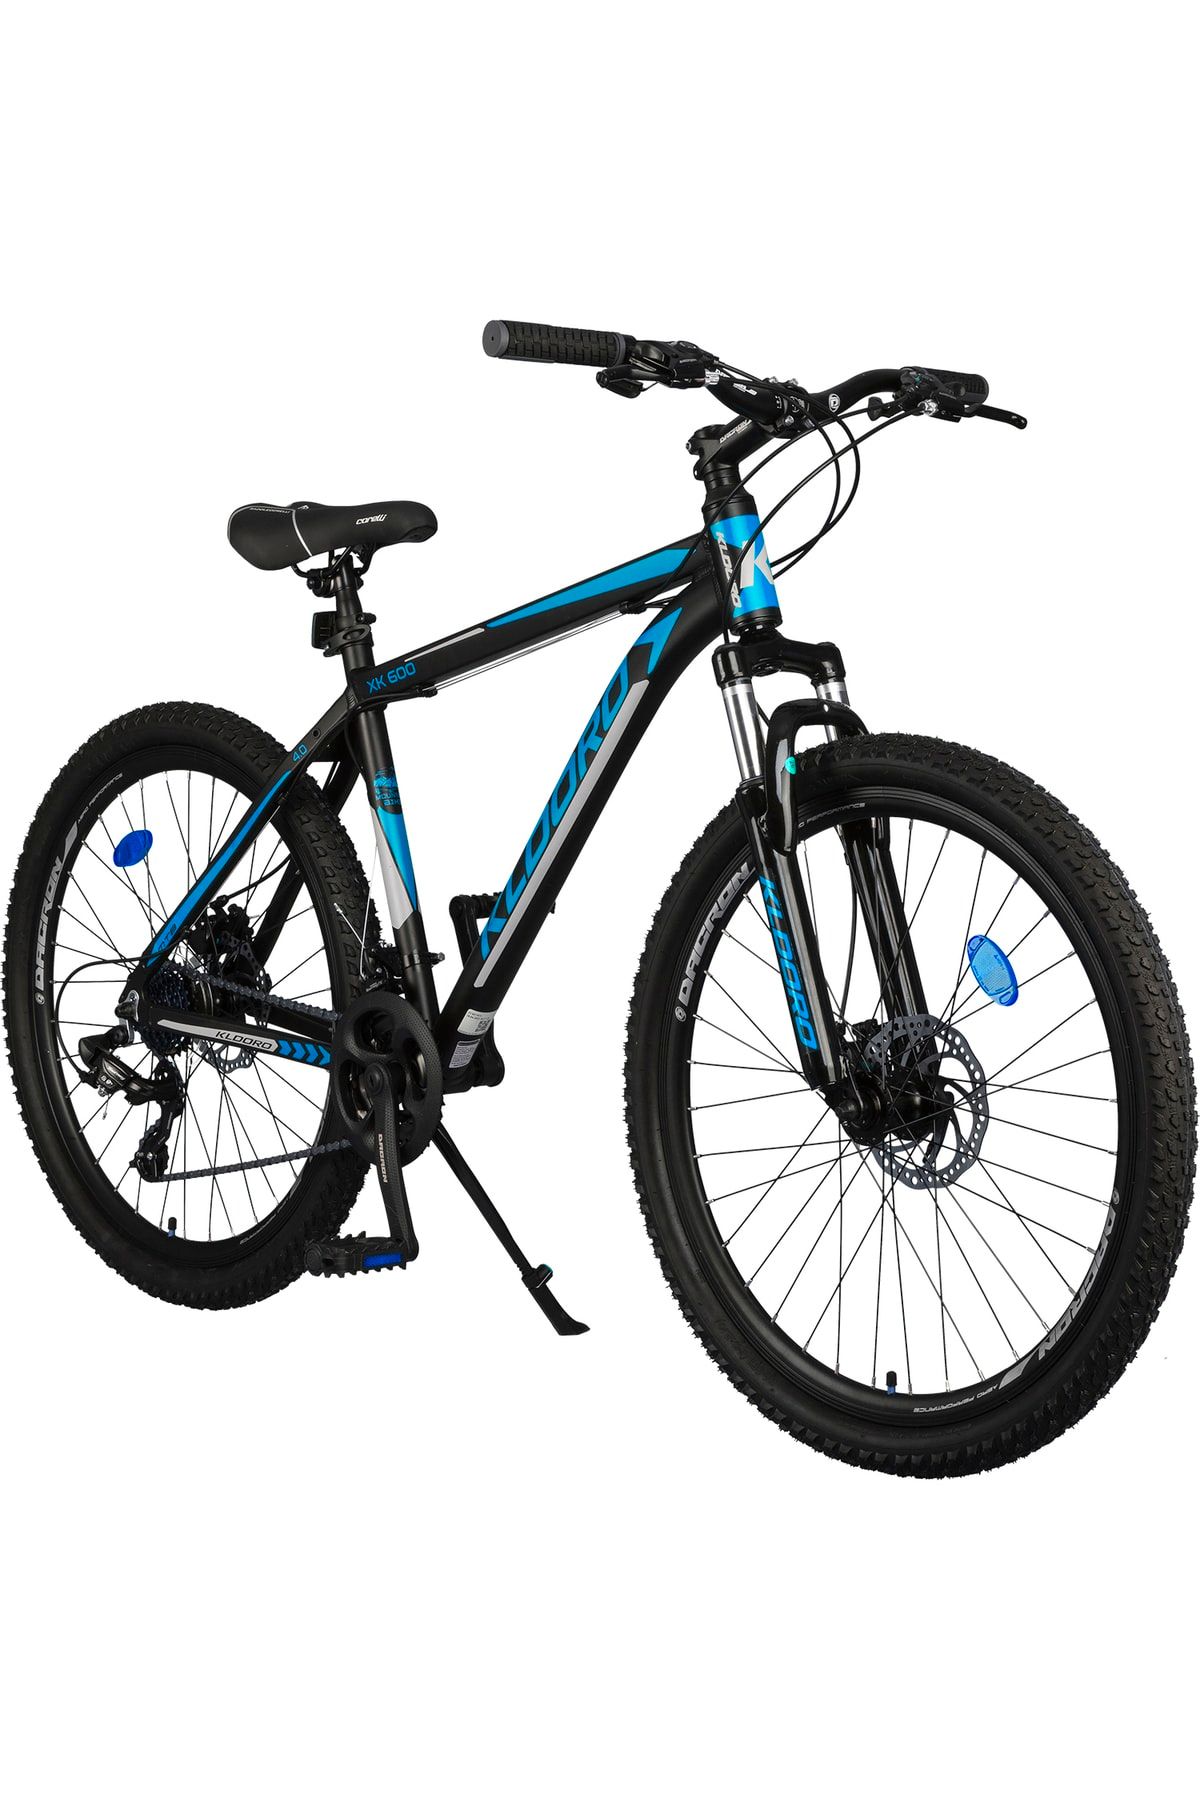 Kldoro Xk600 4.0 26 Jant Bisiklet Alüminyum Kadro 24 Vites Mekanik Disk Fren Dağ Bisikleti